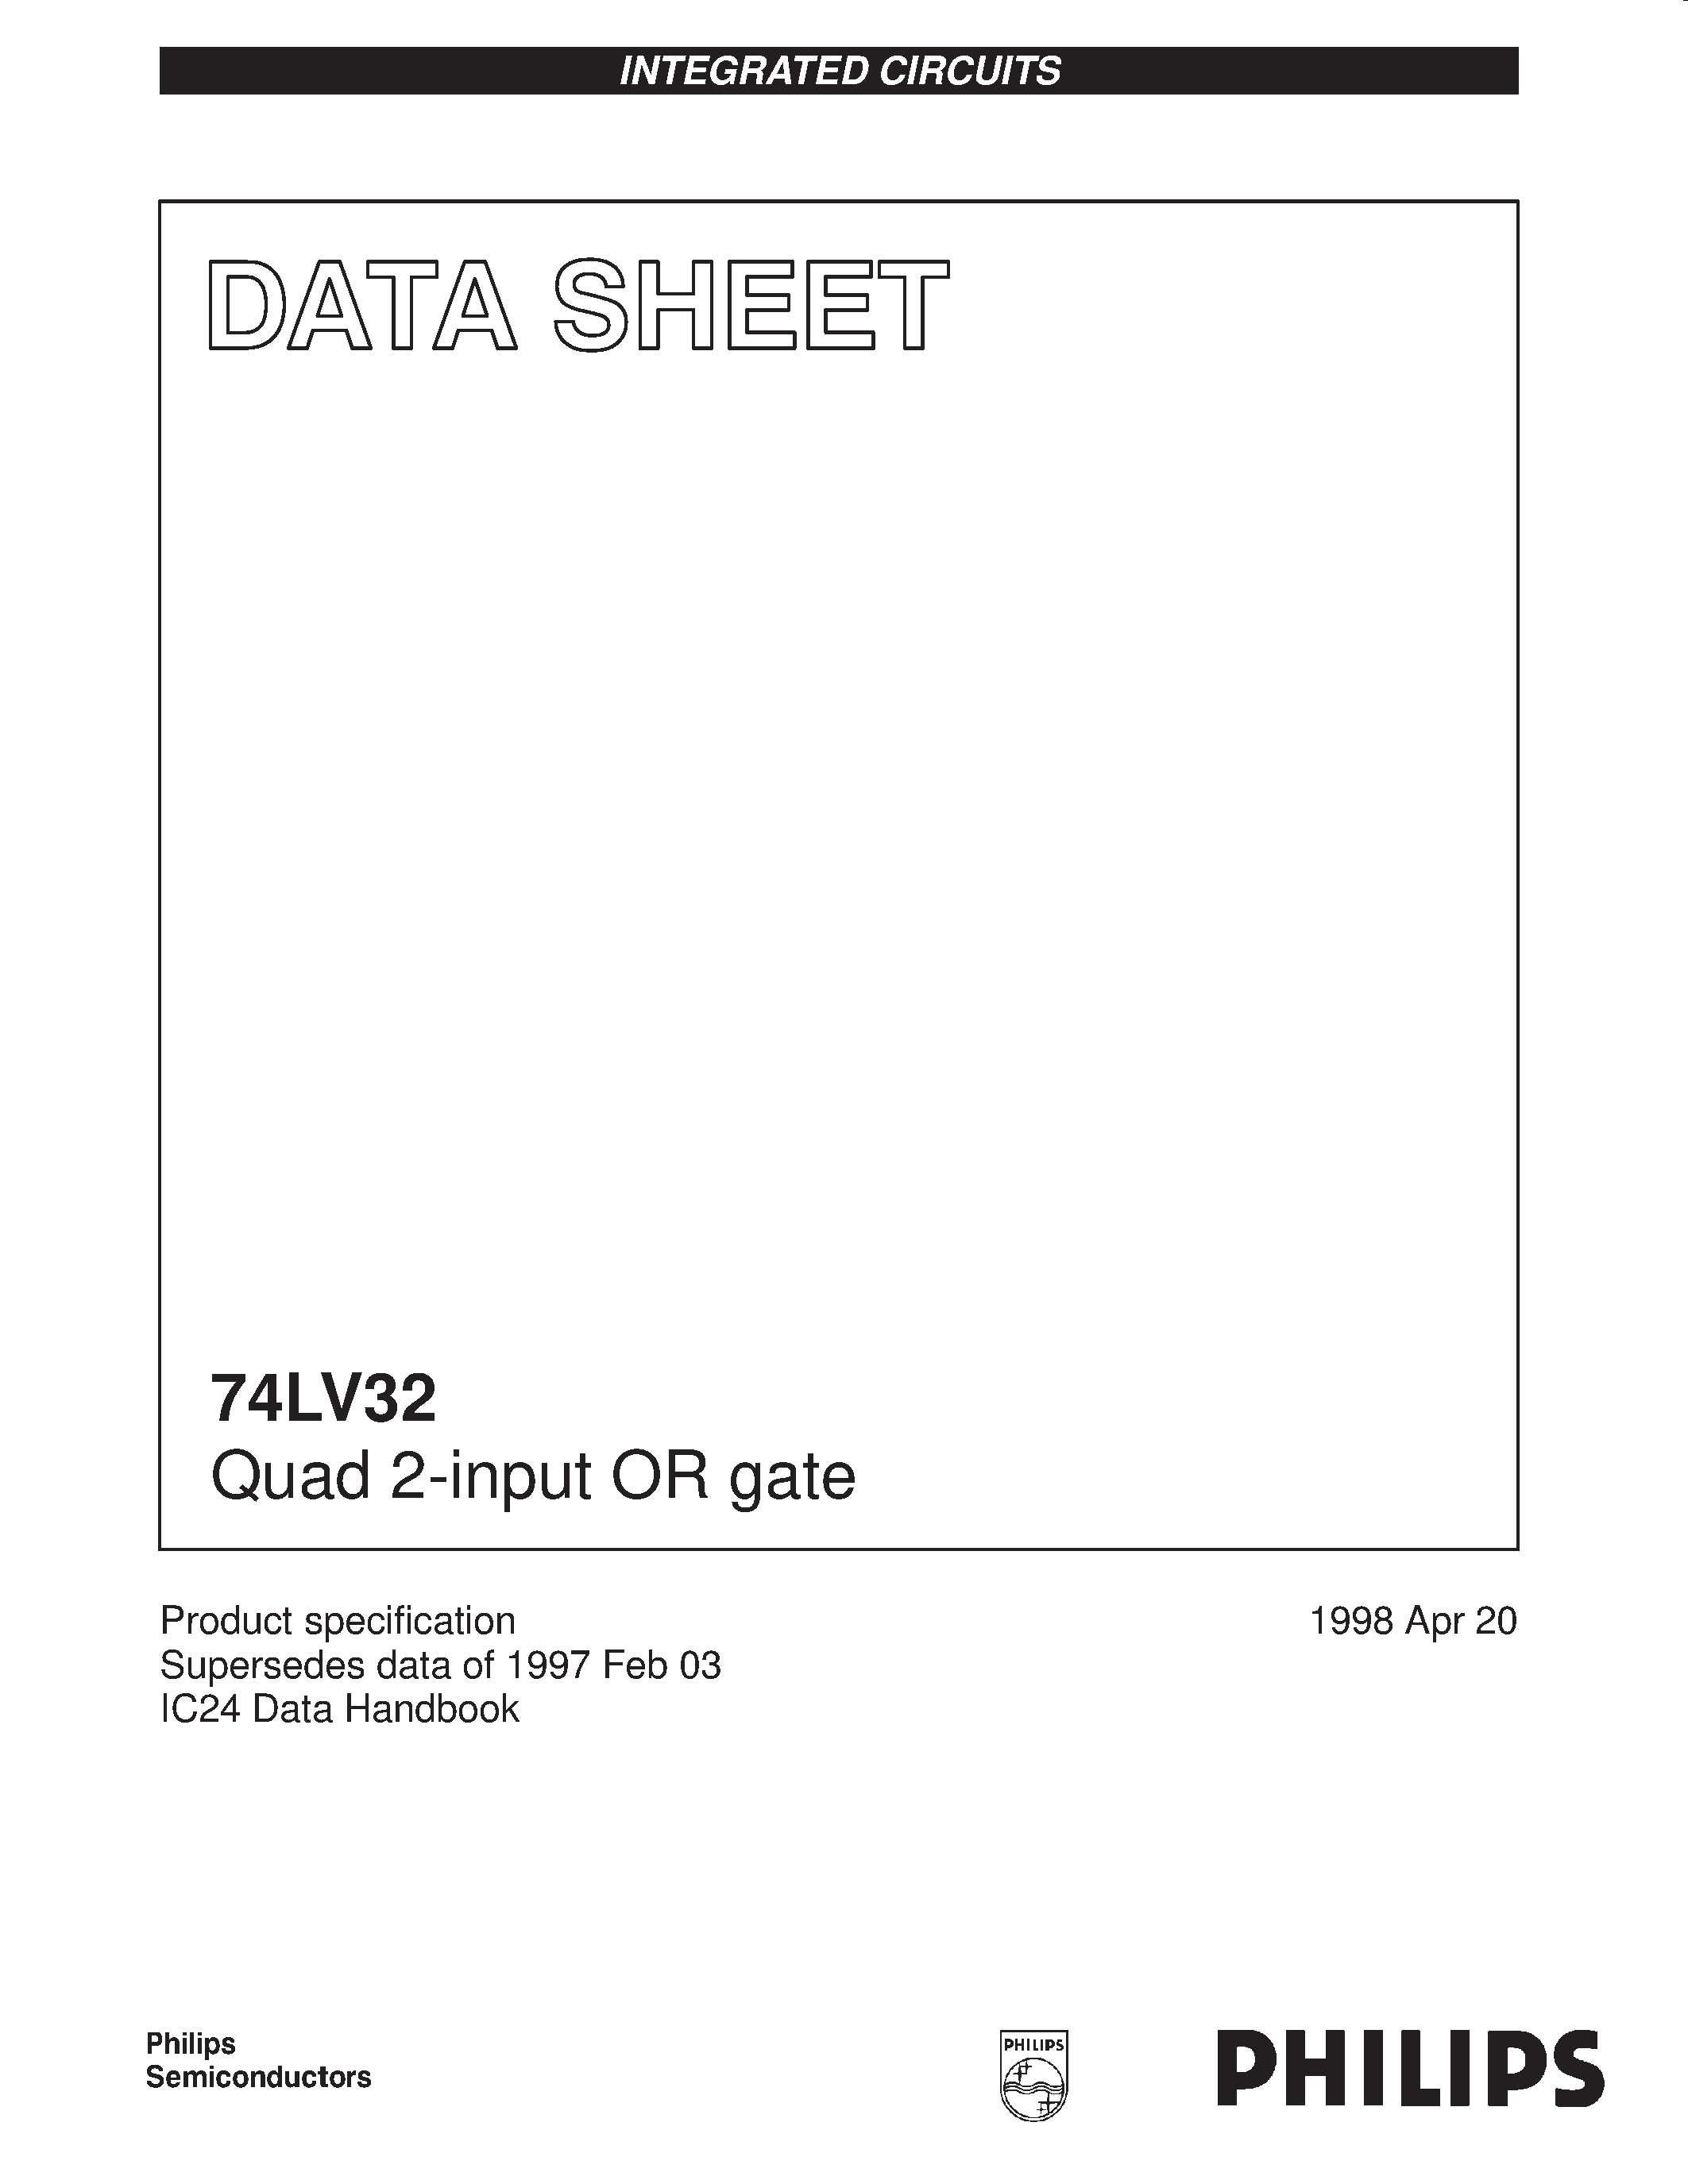 Даташит 74LV32 - Quad 2-input OR gate страница 1